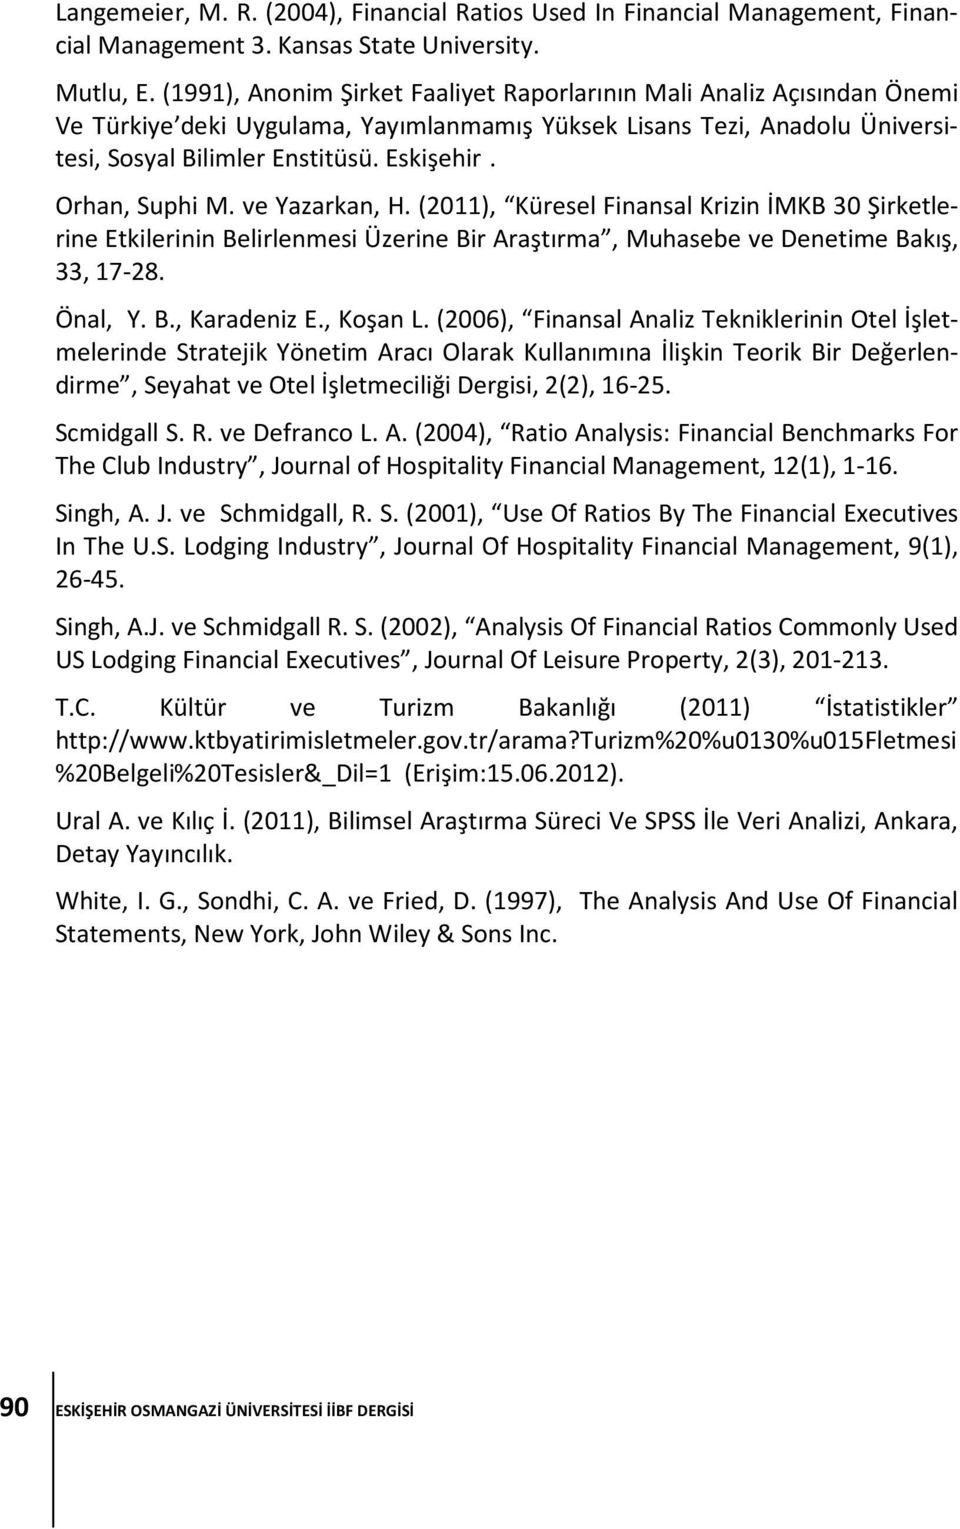 Orhan, Suphi M. ve Yazarkan, H. (2011), Küresel Finansal Krizin İMKB 30 Şirketlerine Etkilerinin Belirlenmesi Üzerine Bir Araştırma, Muhasebe ve Denetime Bakış, 33, 17-28. Önal, Y. B., Karadeniz E.